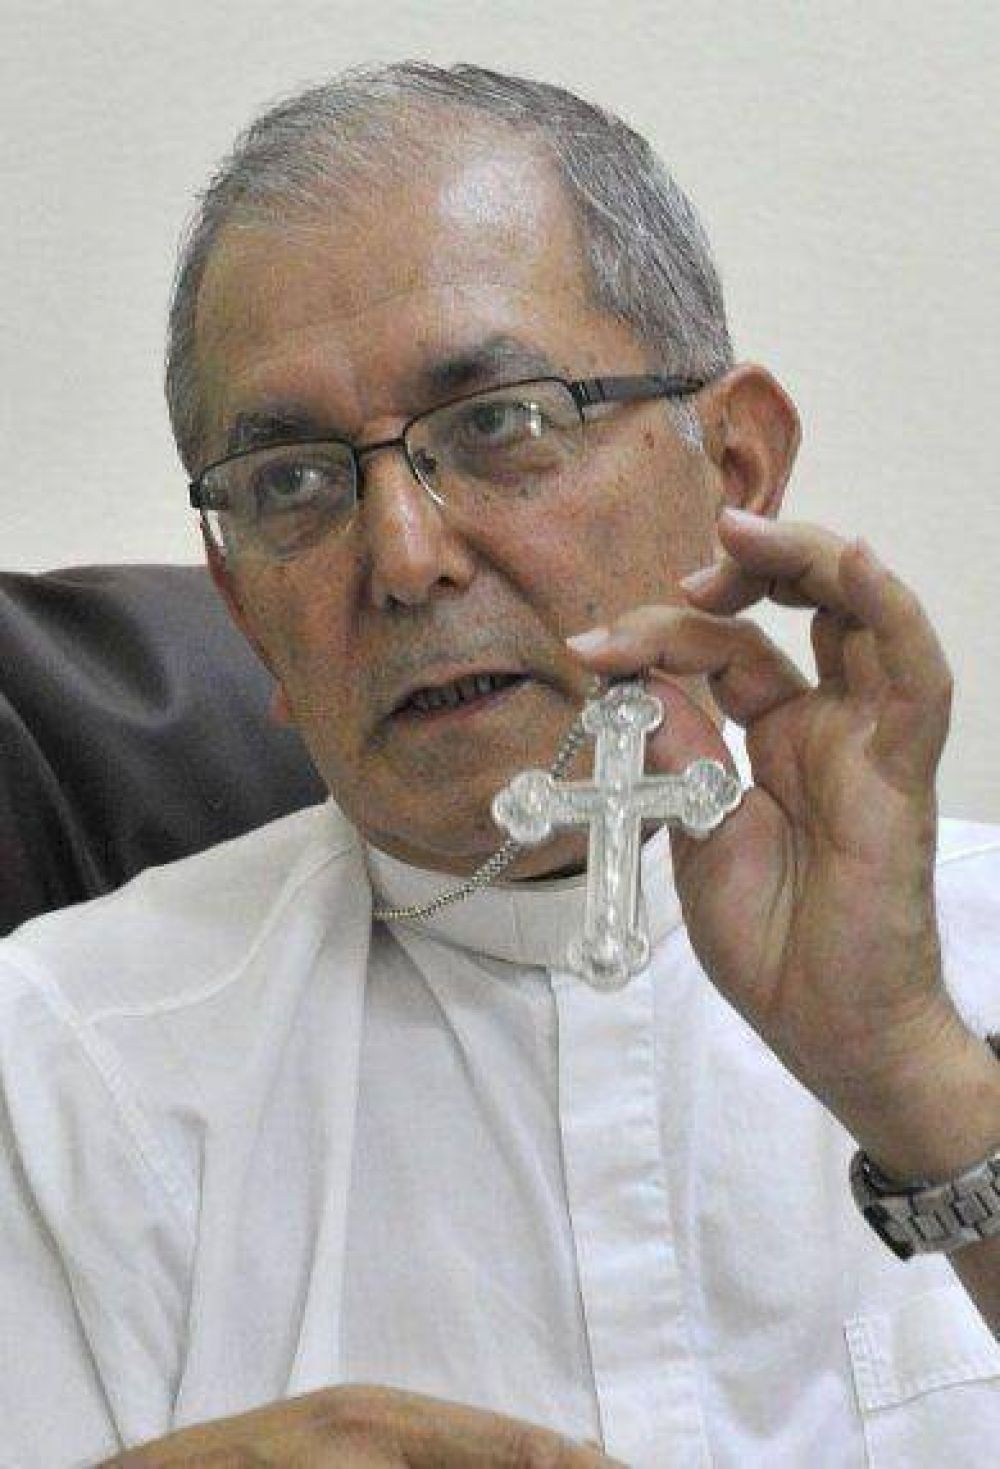 El Papa bendijo el palio que usará arzobispo de Asunción